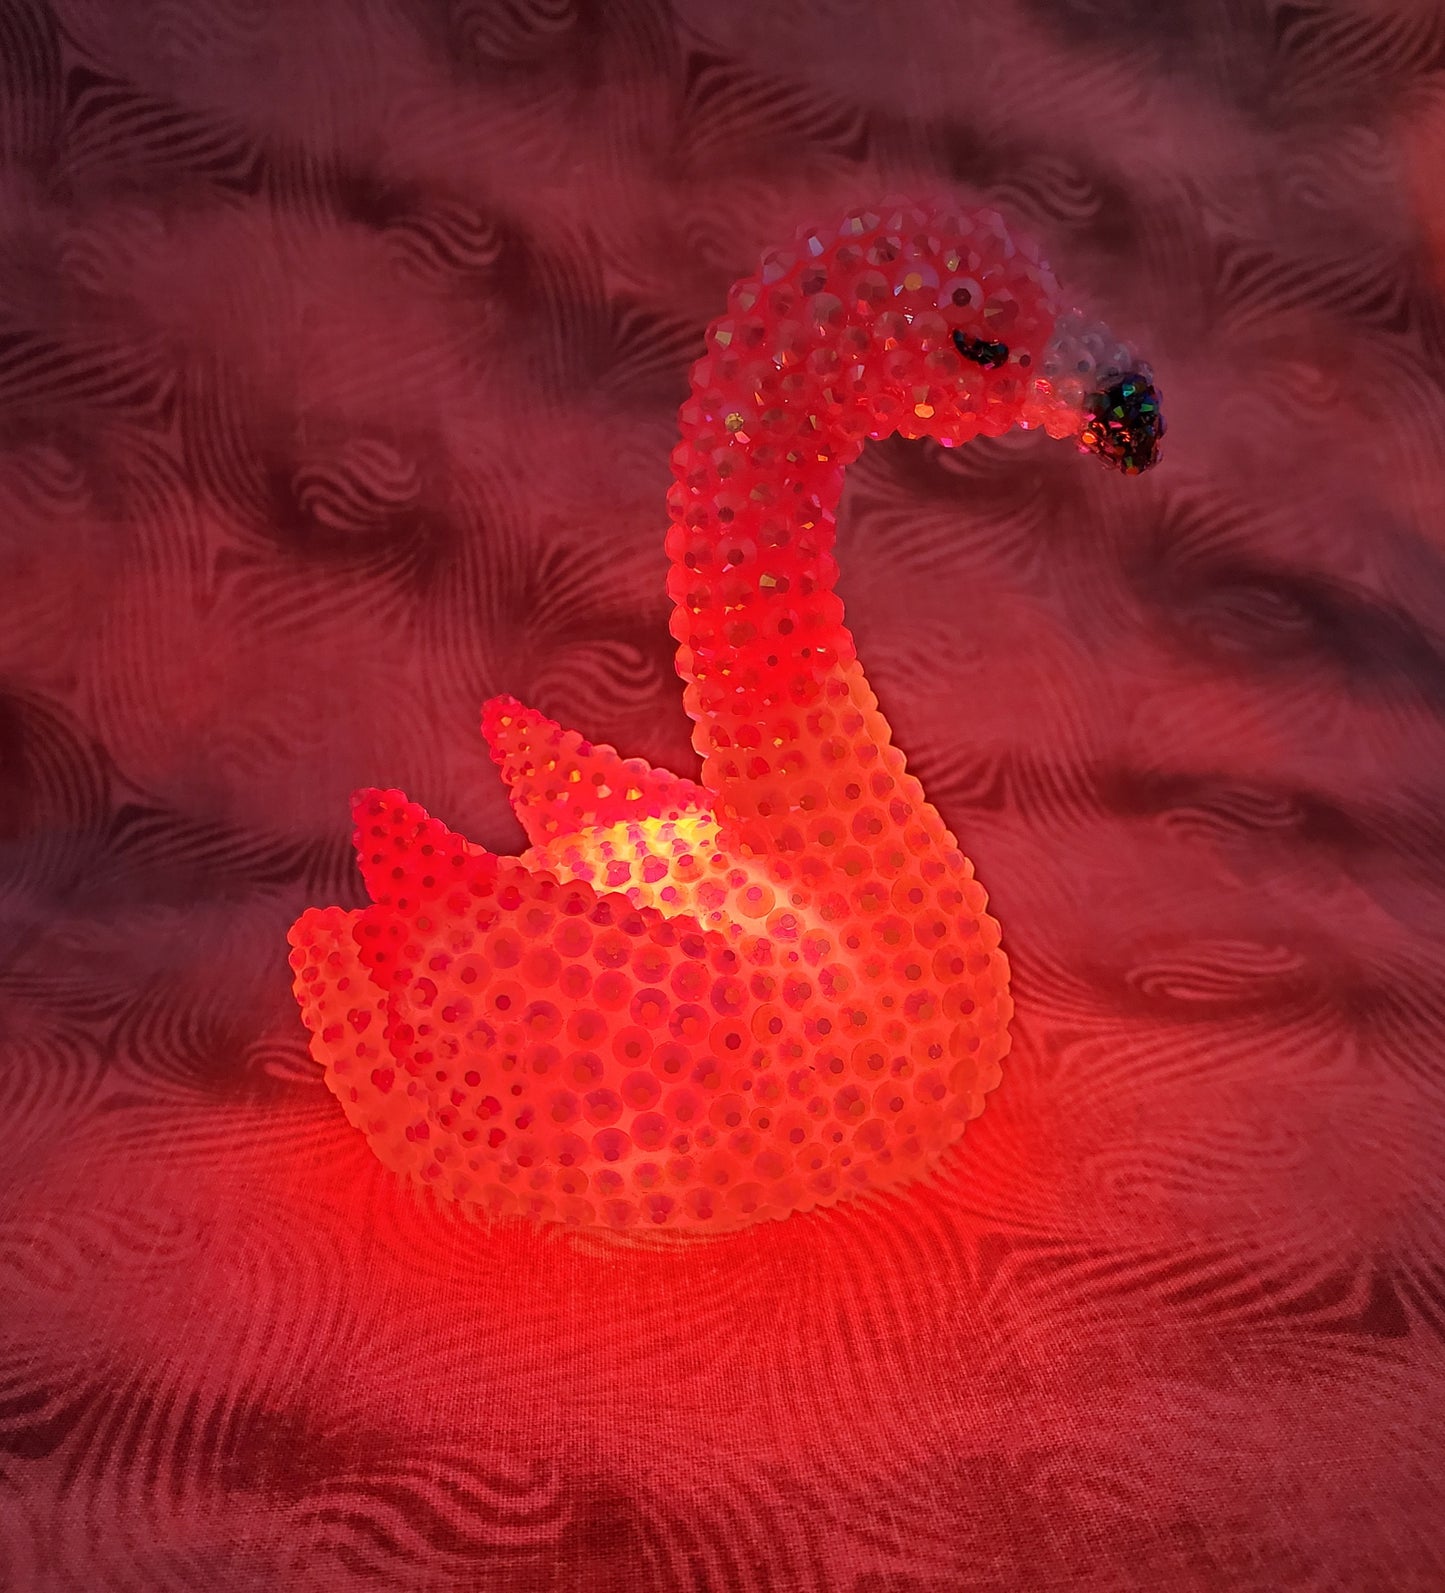 Rhinestone-Encrusted Light-Up Flamingo